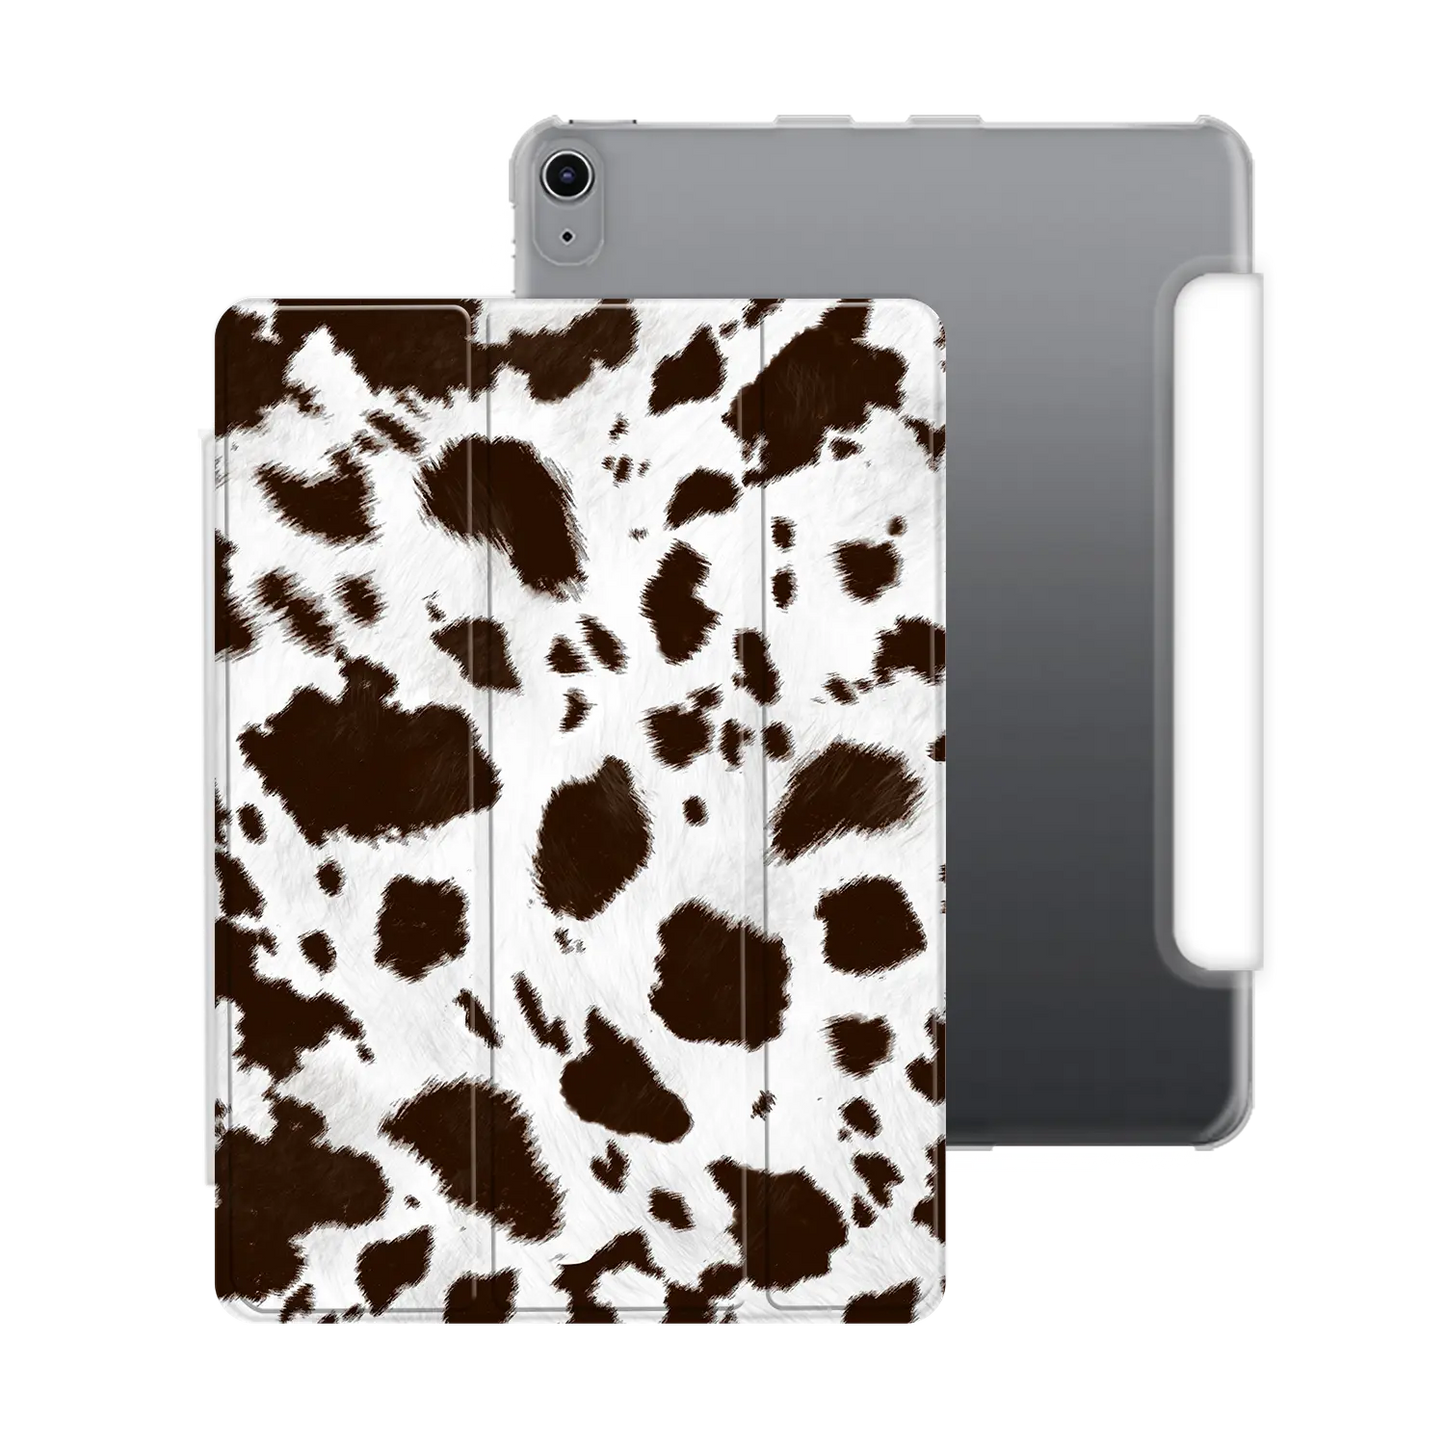 Moo Print - Personalised iPad Case